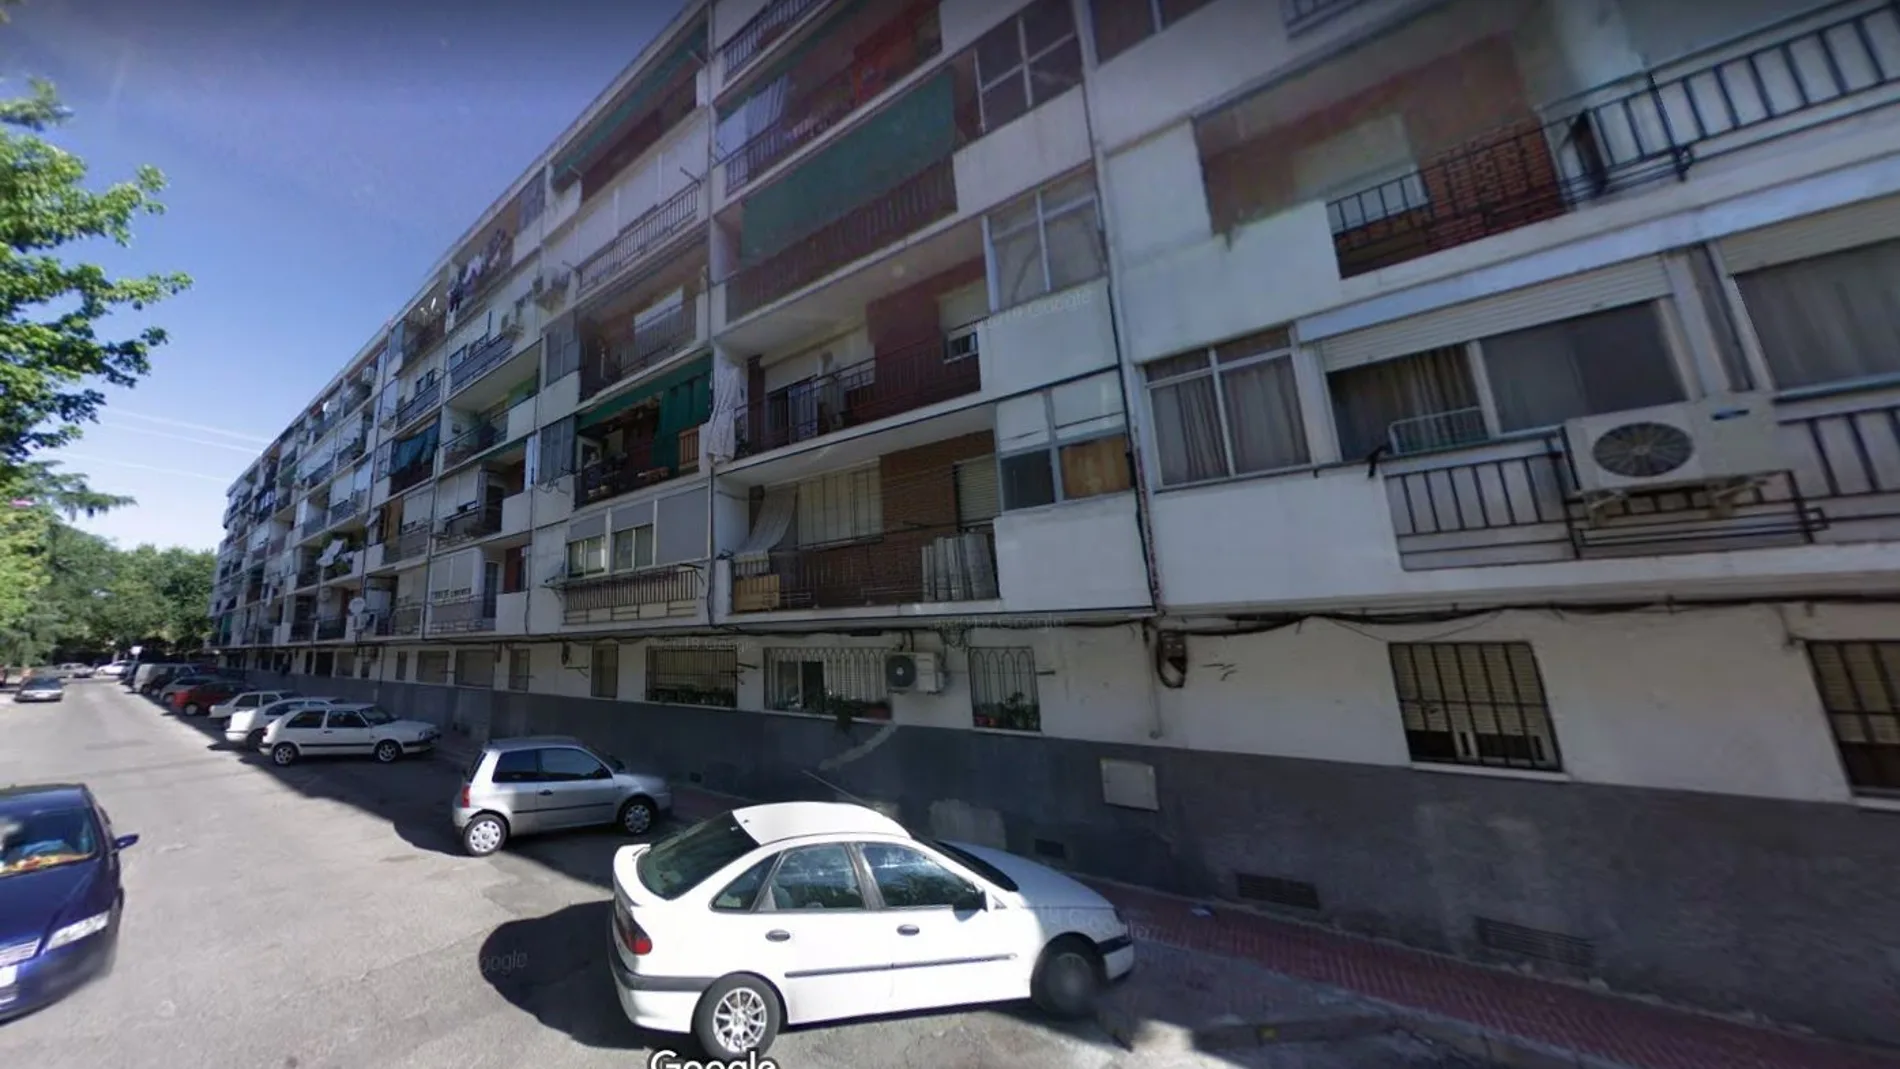 Calle Garza de Getafe, donde ayer un hombre fue detenido por amenazar con un cuchillo a su familia